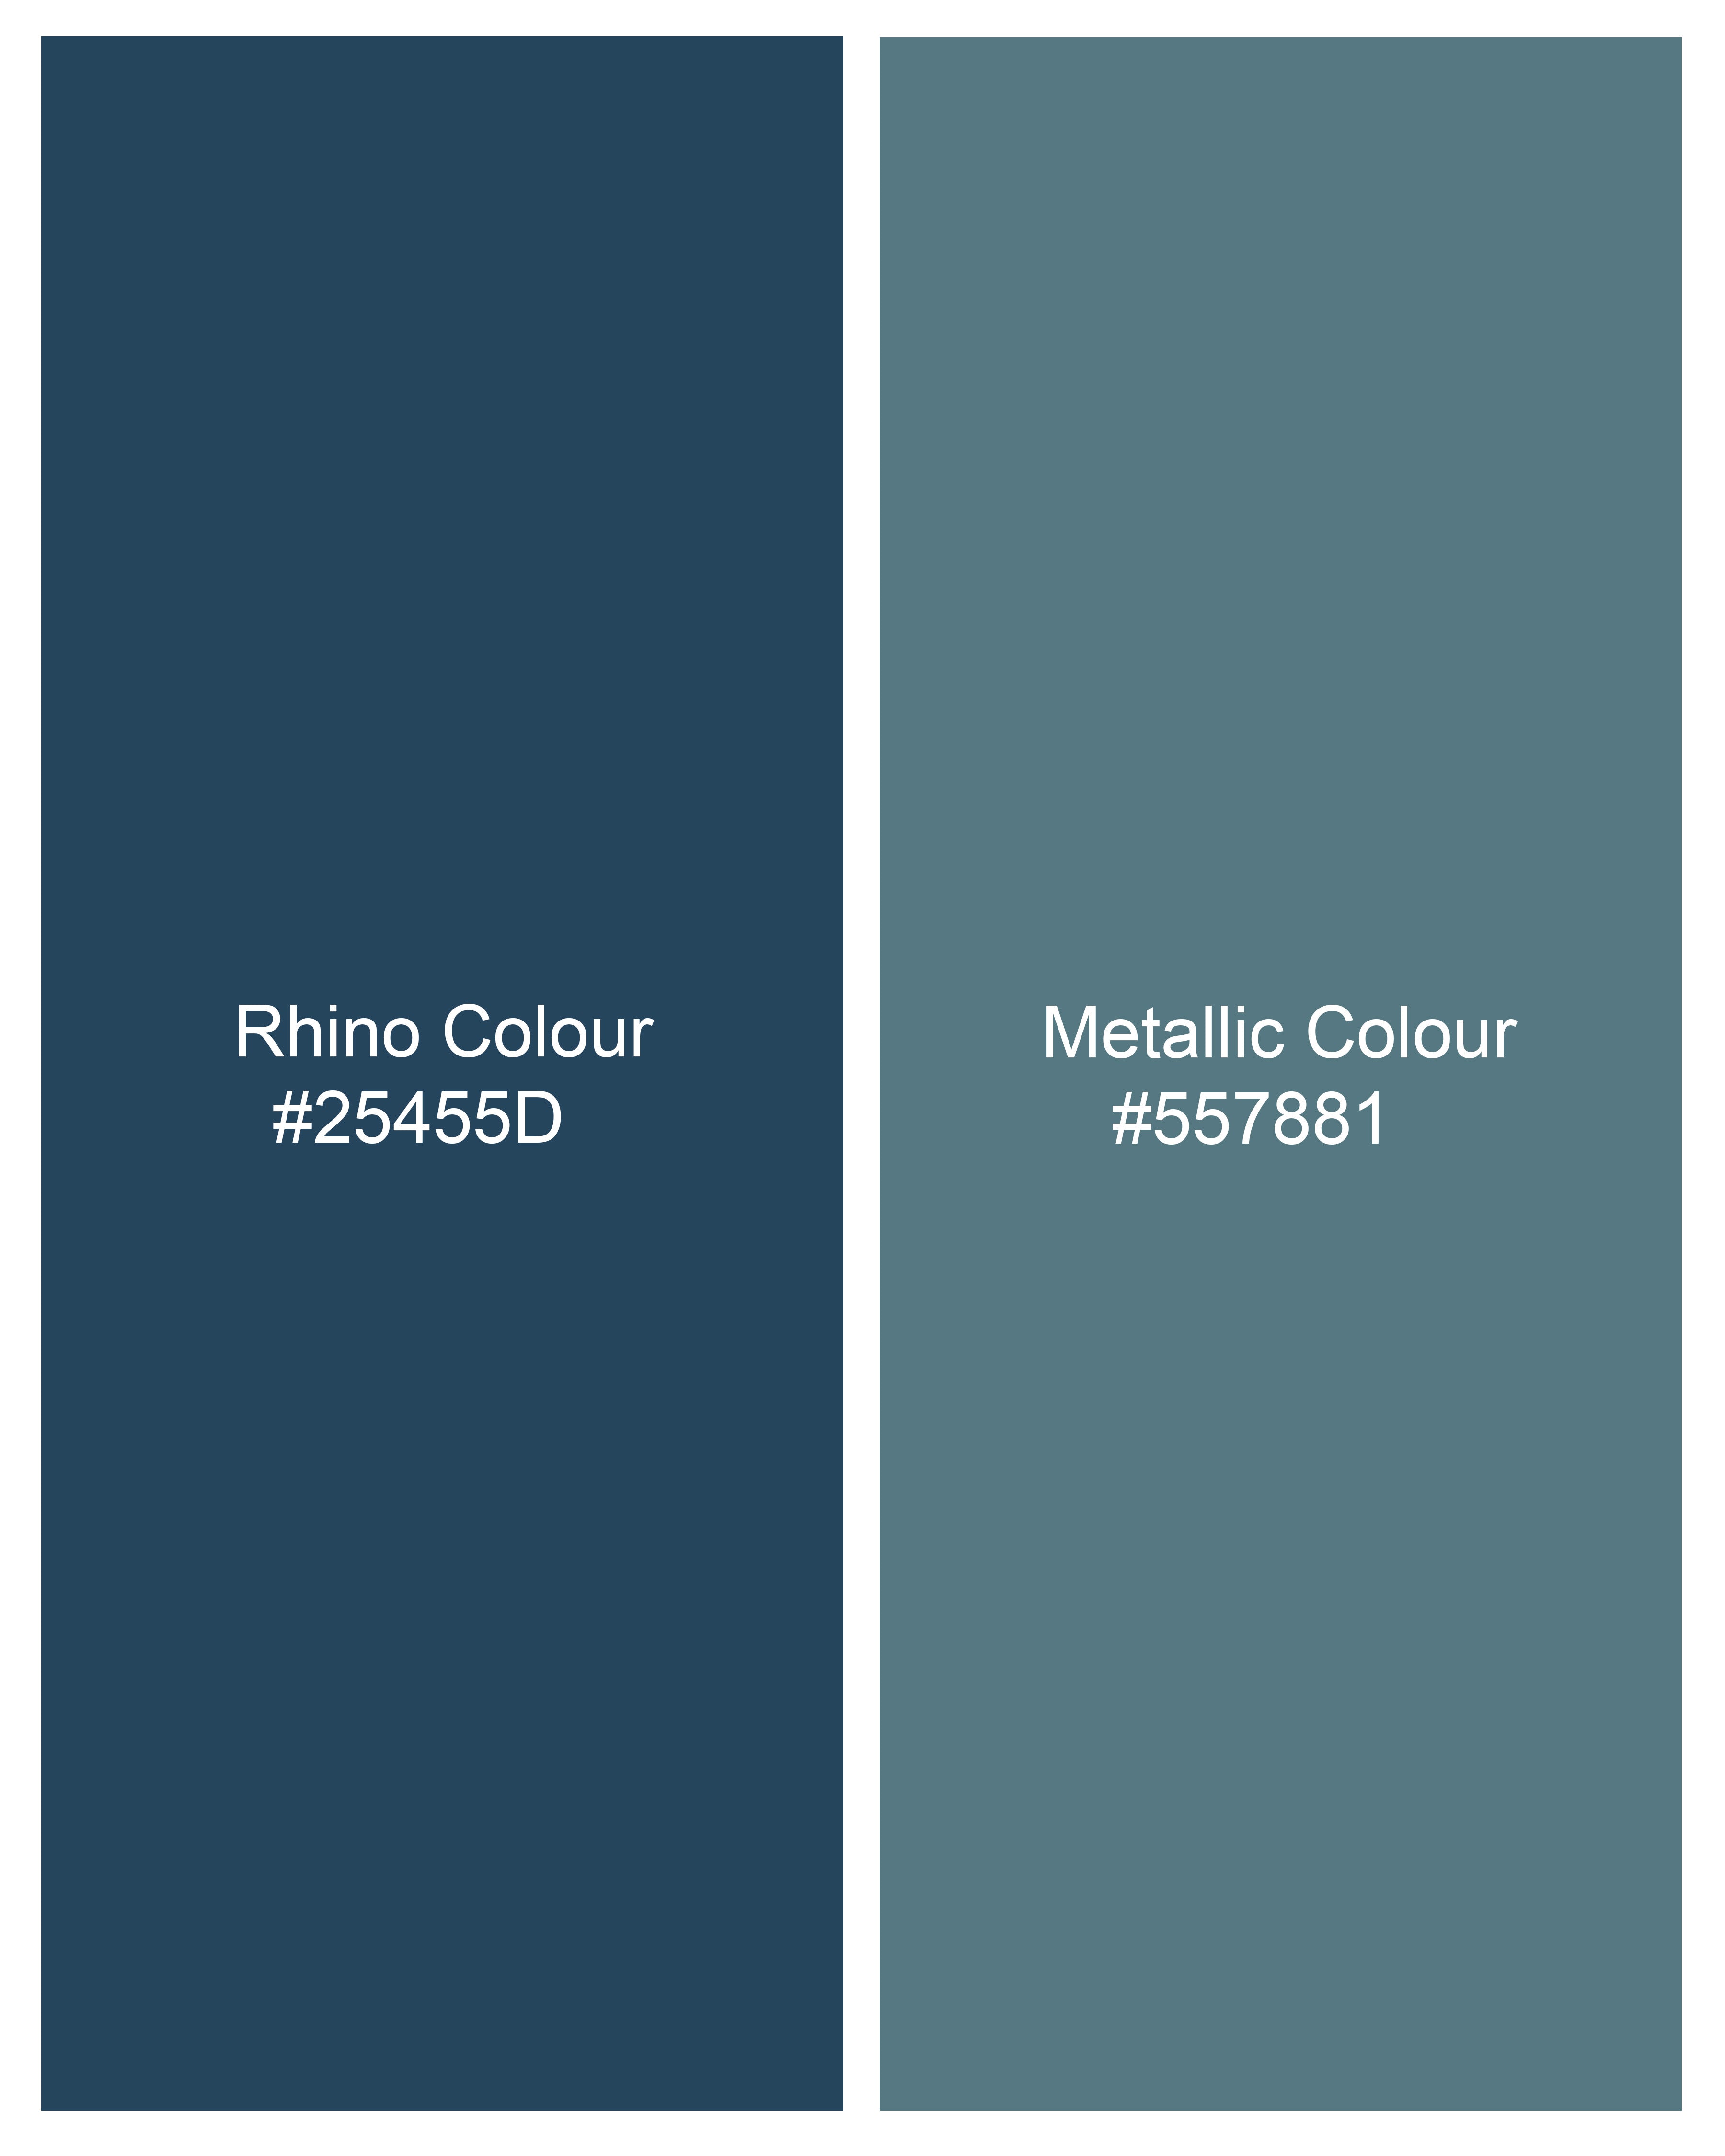 Rhino Blue Leaves Printed Premium Cotton Designer Shirt 9295-CA-P440-38,9295-CA-P440-H-38,9295-CA-P440-39,9295-CA-P440-H-39,9295-CA-P440-40,9295-CA-P440-H-40,9295-CA-P440-42,9295-CA-P440-H-42,9295-CA-P440-44,9295-CA-P440-H-44,9295-CA-P440-46,9295-CA-P440-H-46,9295-CA-P440-48,9295-CA-P440-H-48,9295-CA-P440-50,9295-CA-P440-H-50,9295-CA-P440-52,9295-CA-P440-H-52